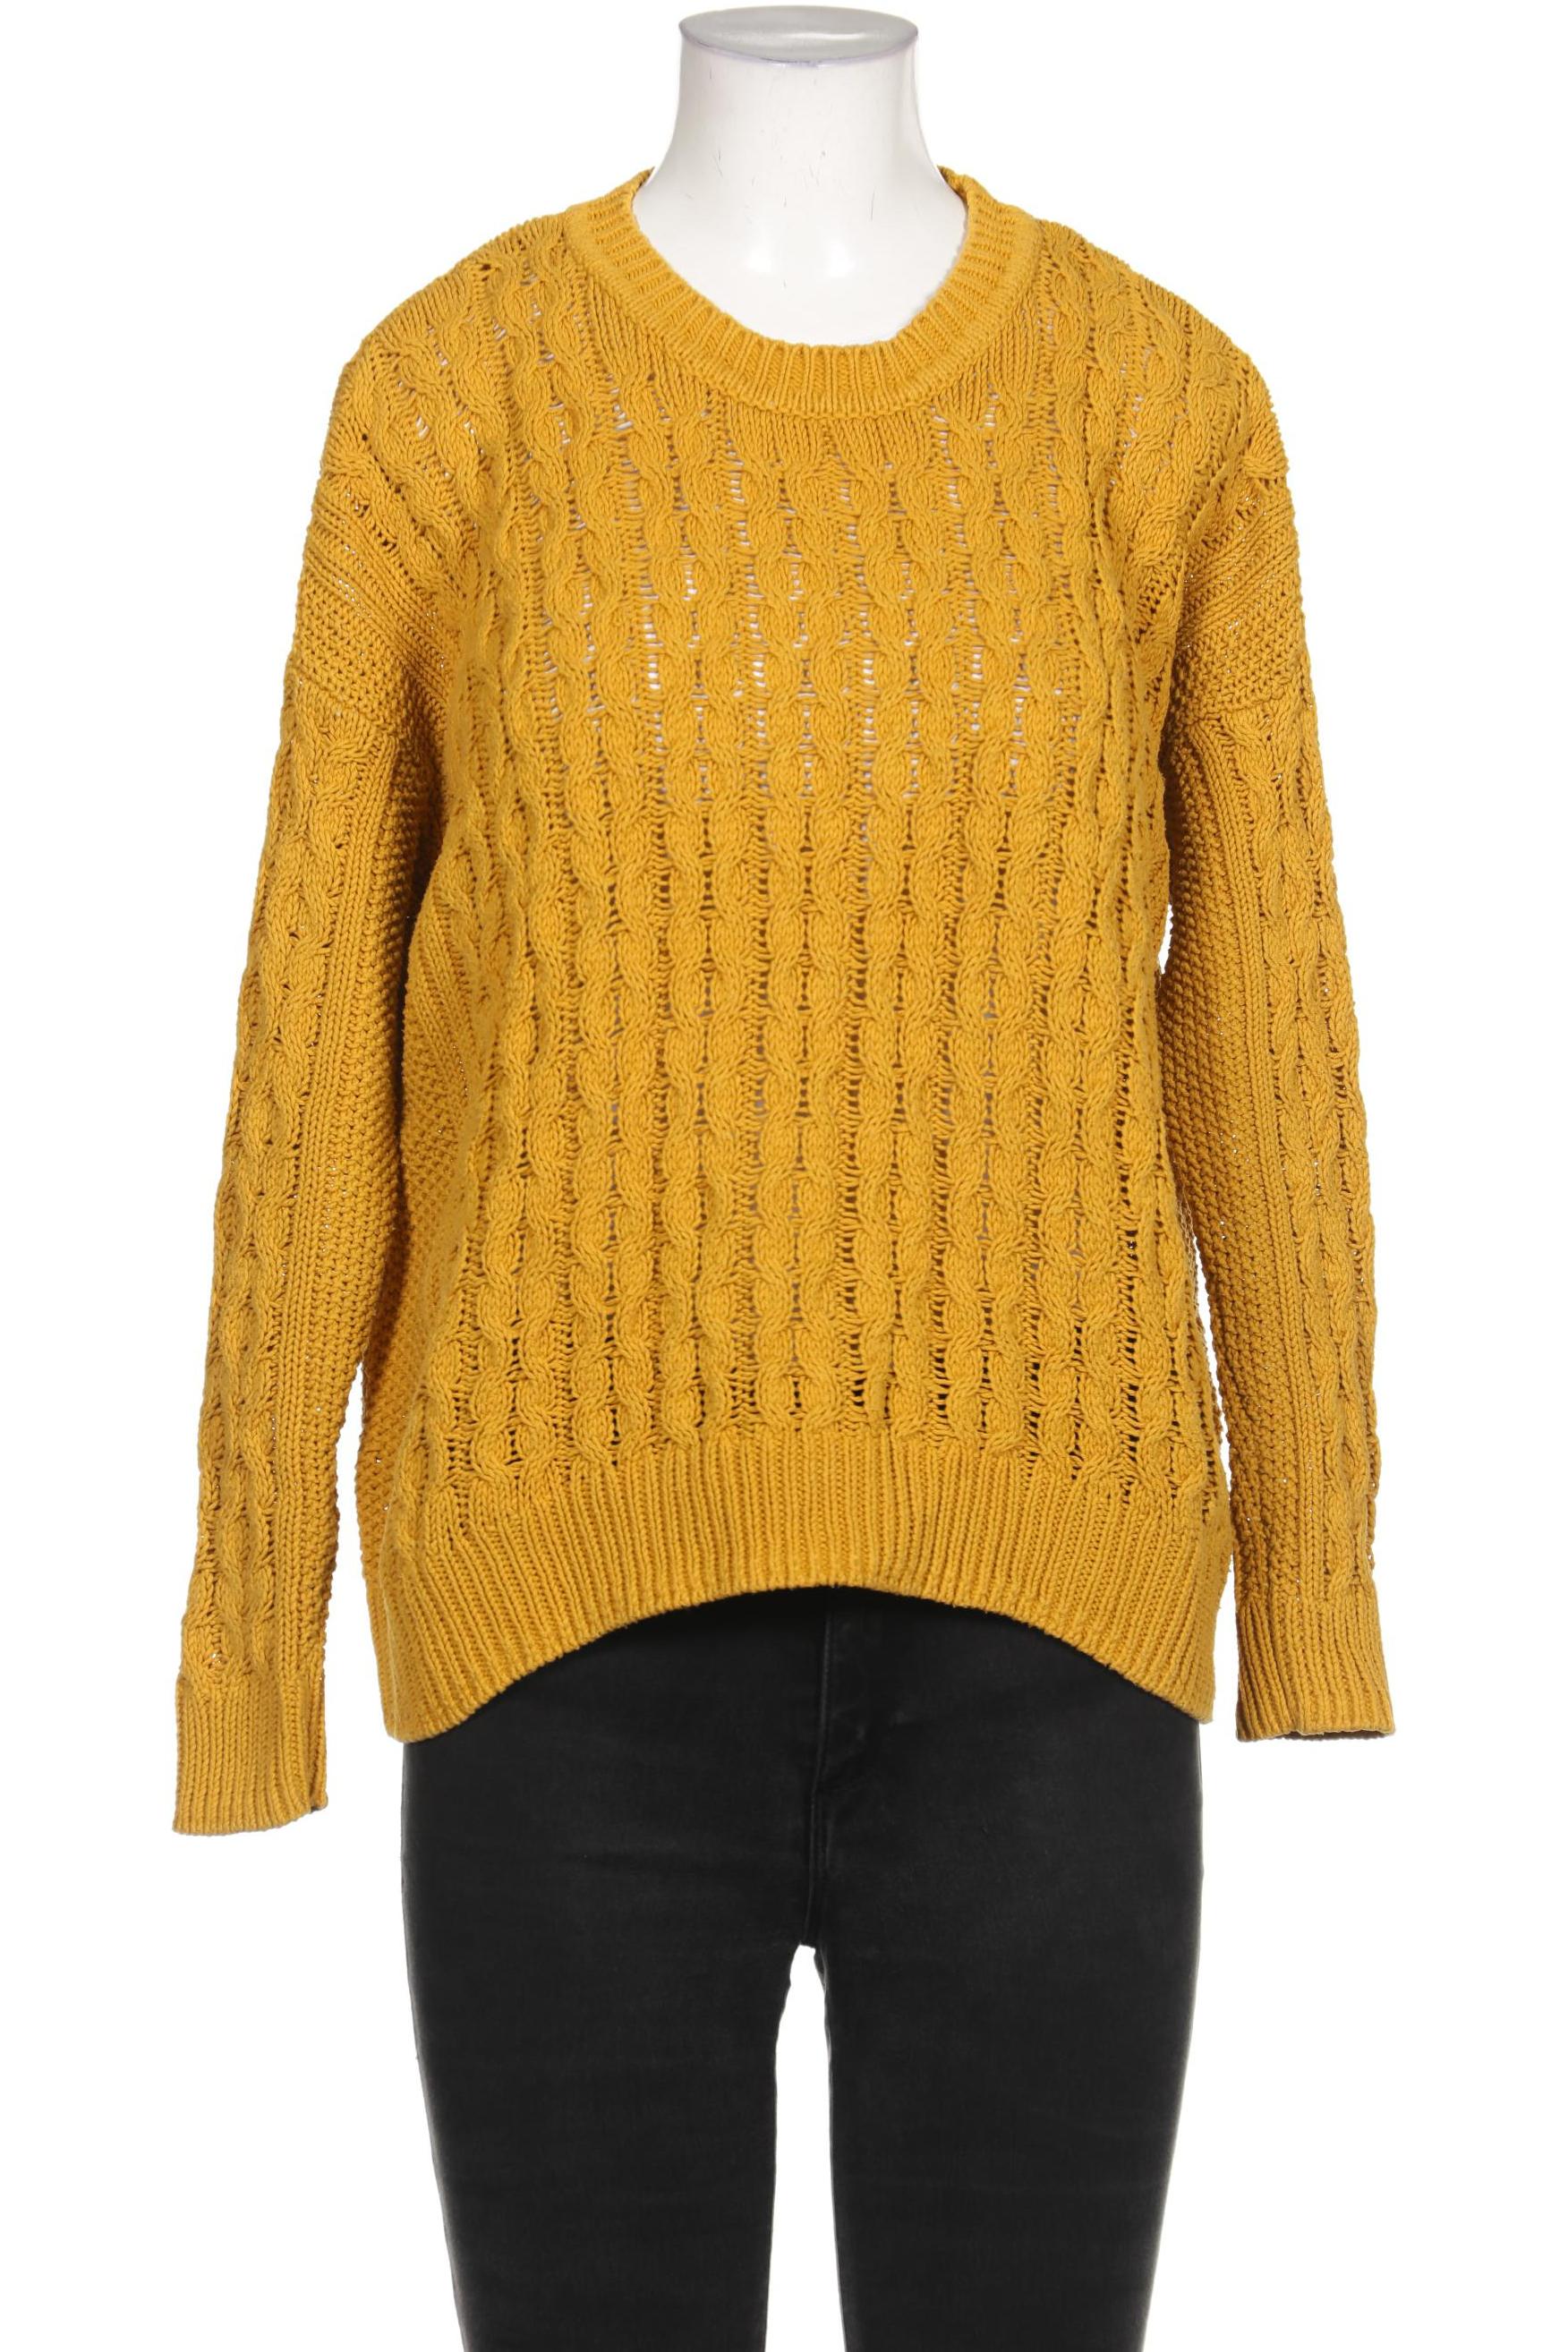 H&M Damen Pullover, gelb von H&M